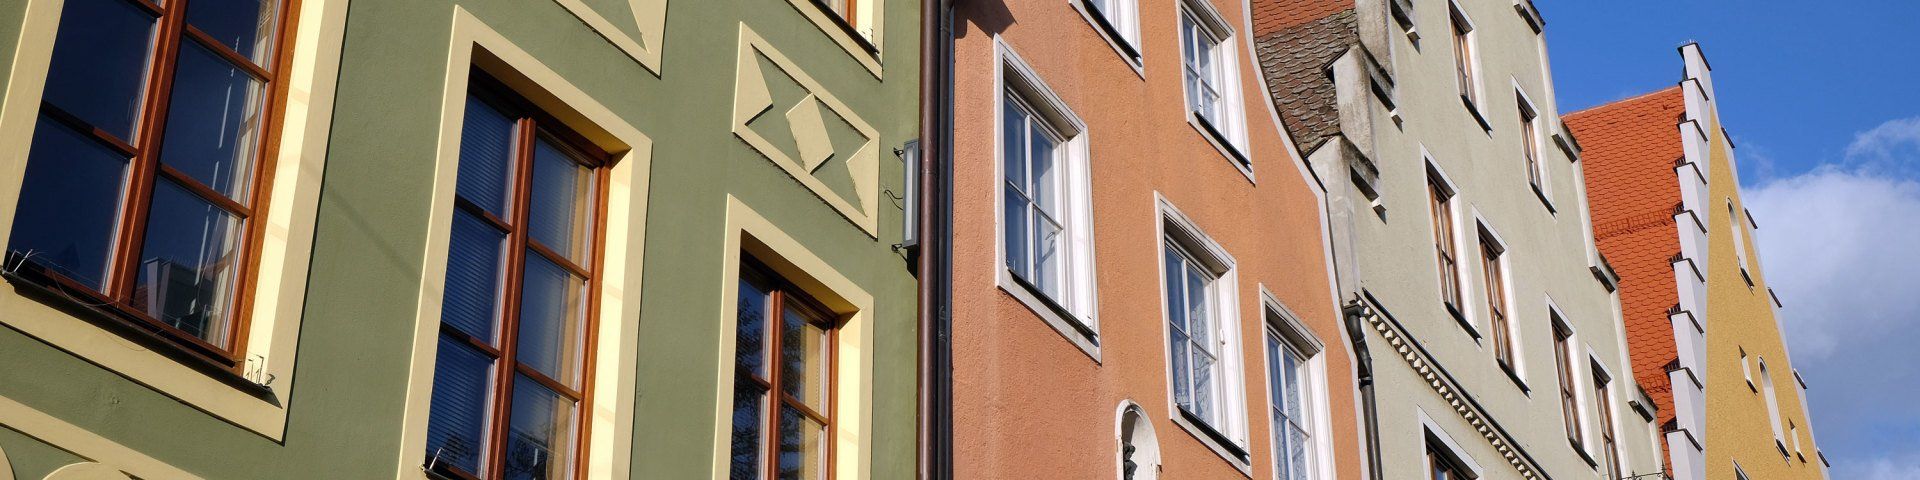 Wohnen gutbürgerlich: Historische Bürgerhäuser in der Fußgängerzone von Ingolstadt